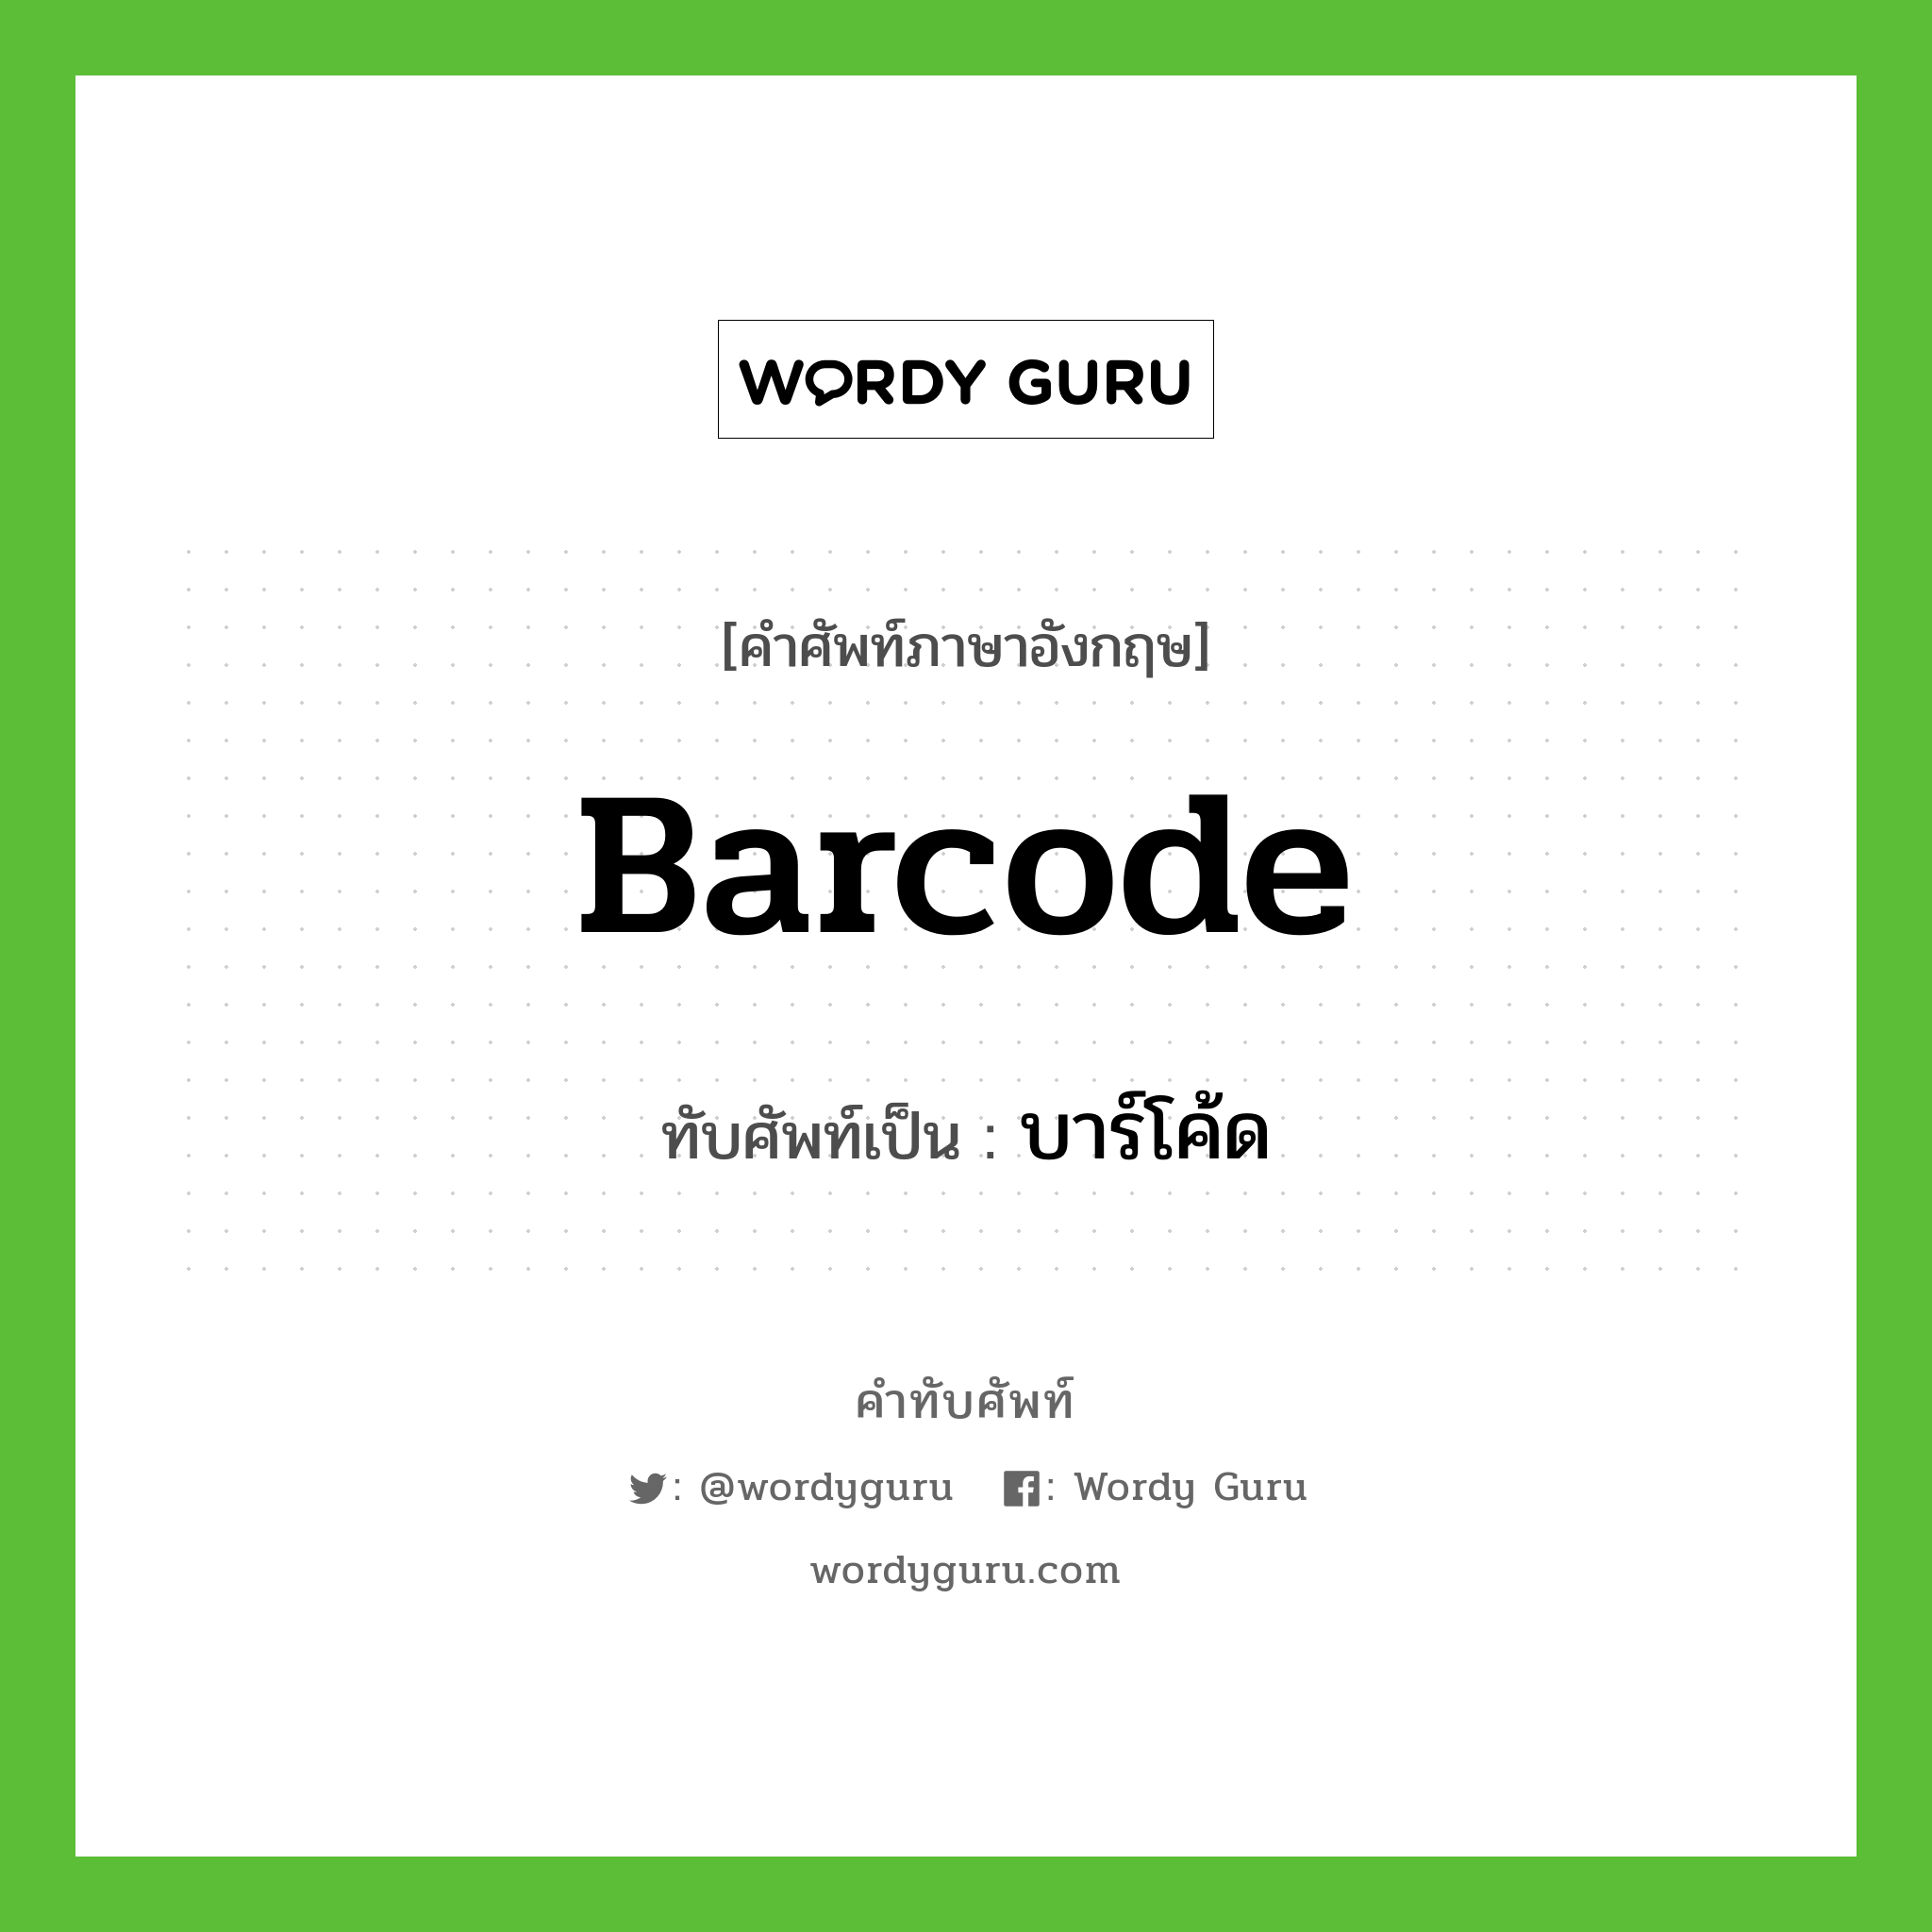 barcode เขียนเป็นคำไทยว่าอะไร?, คำศัพท์ภาษาอังกฤษ barcode ทับศัพท์เป็น บาร์โค้ด